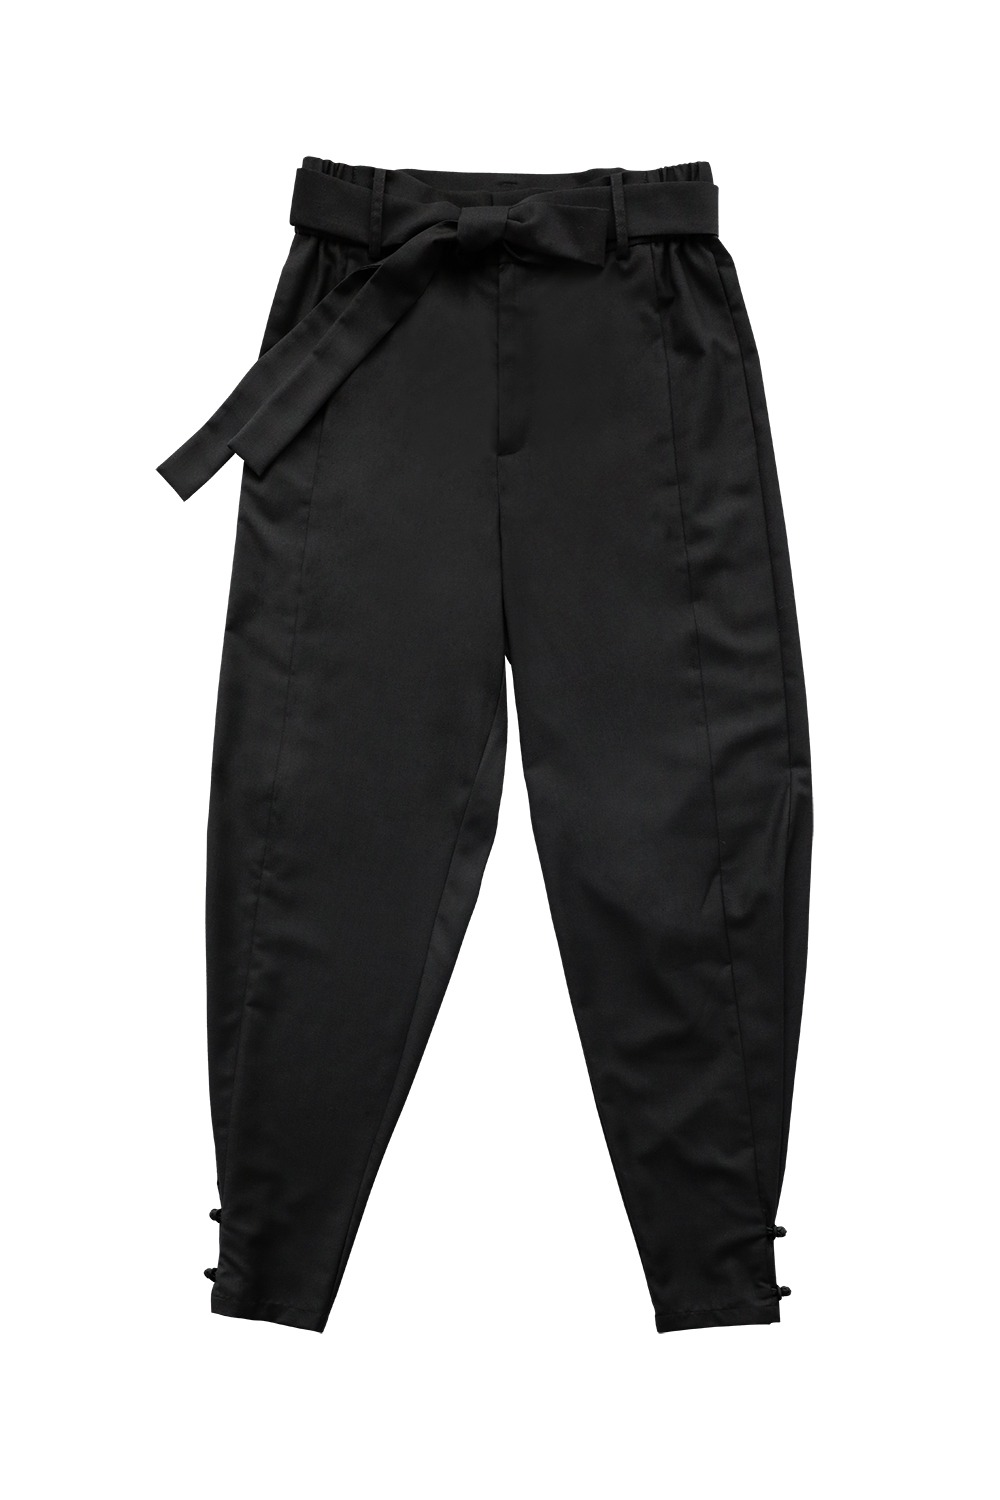 Classic Maru Hanbok Pants [Black] 골든차일드 이장준 착용